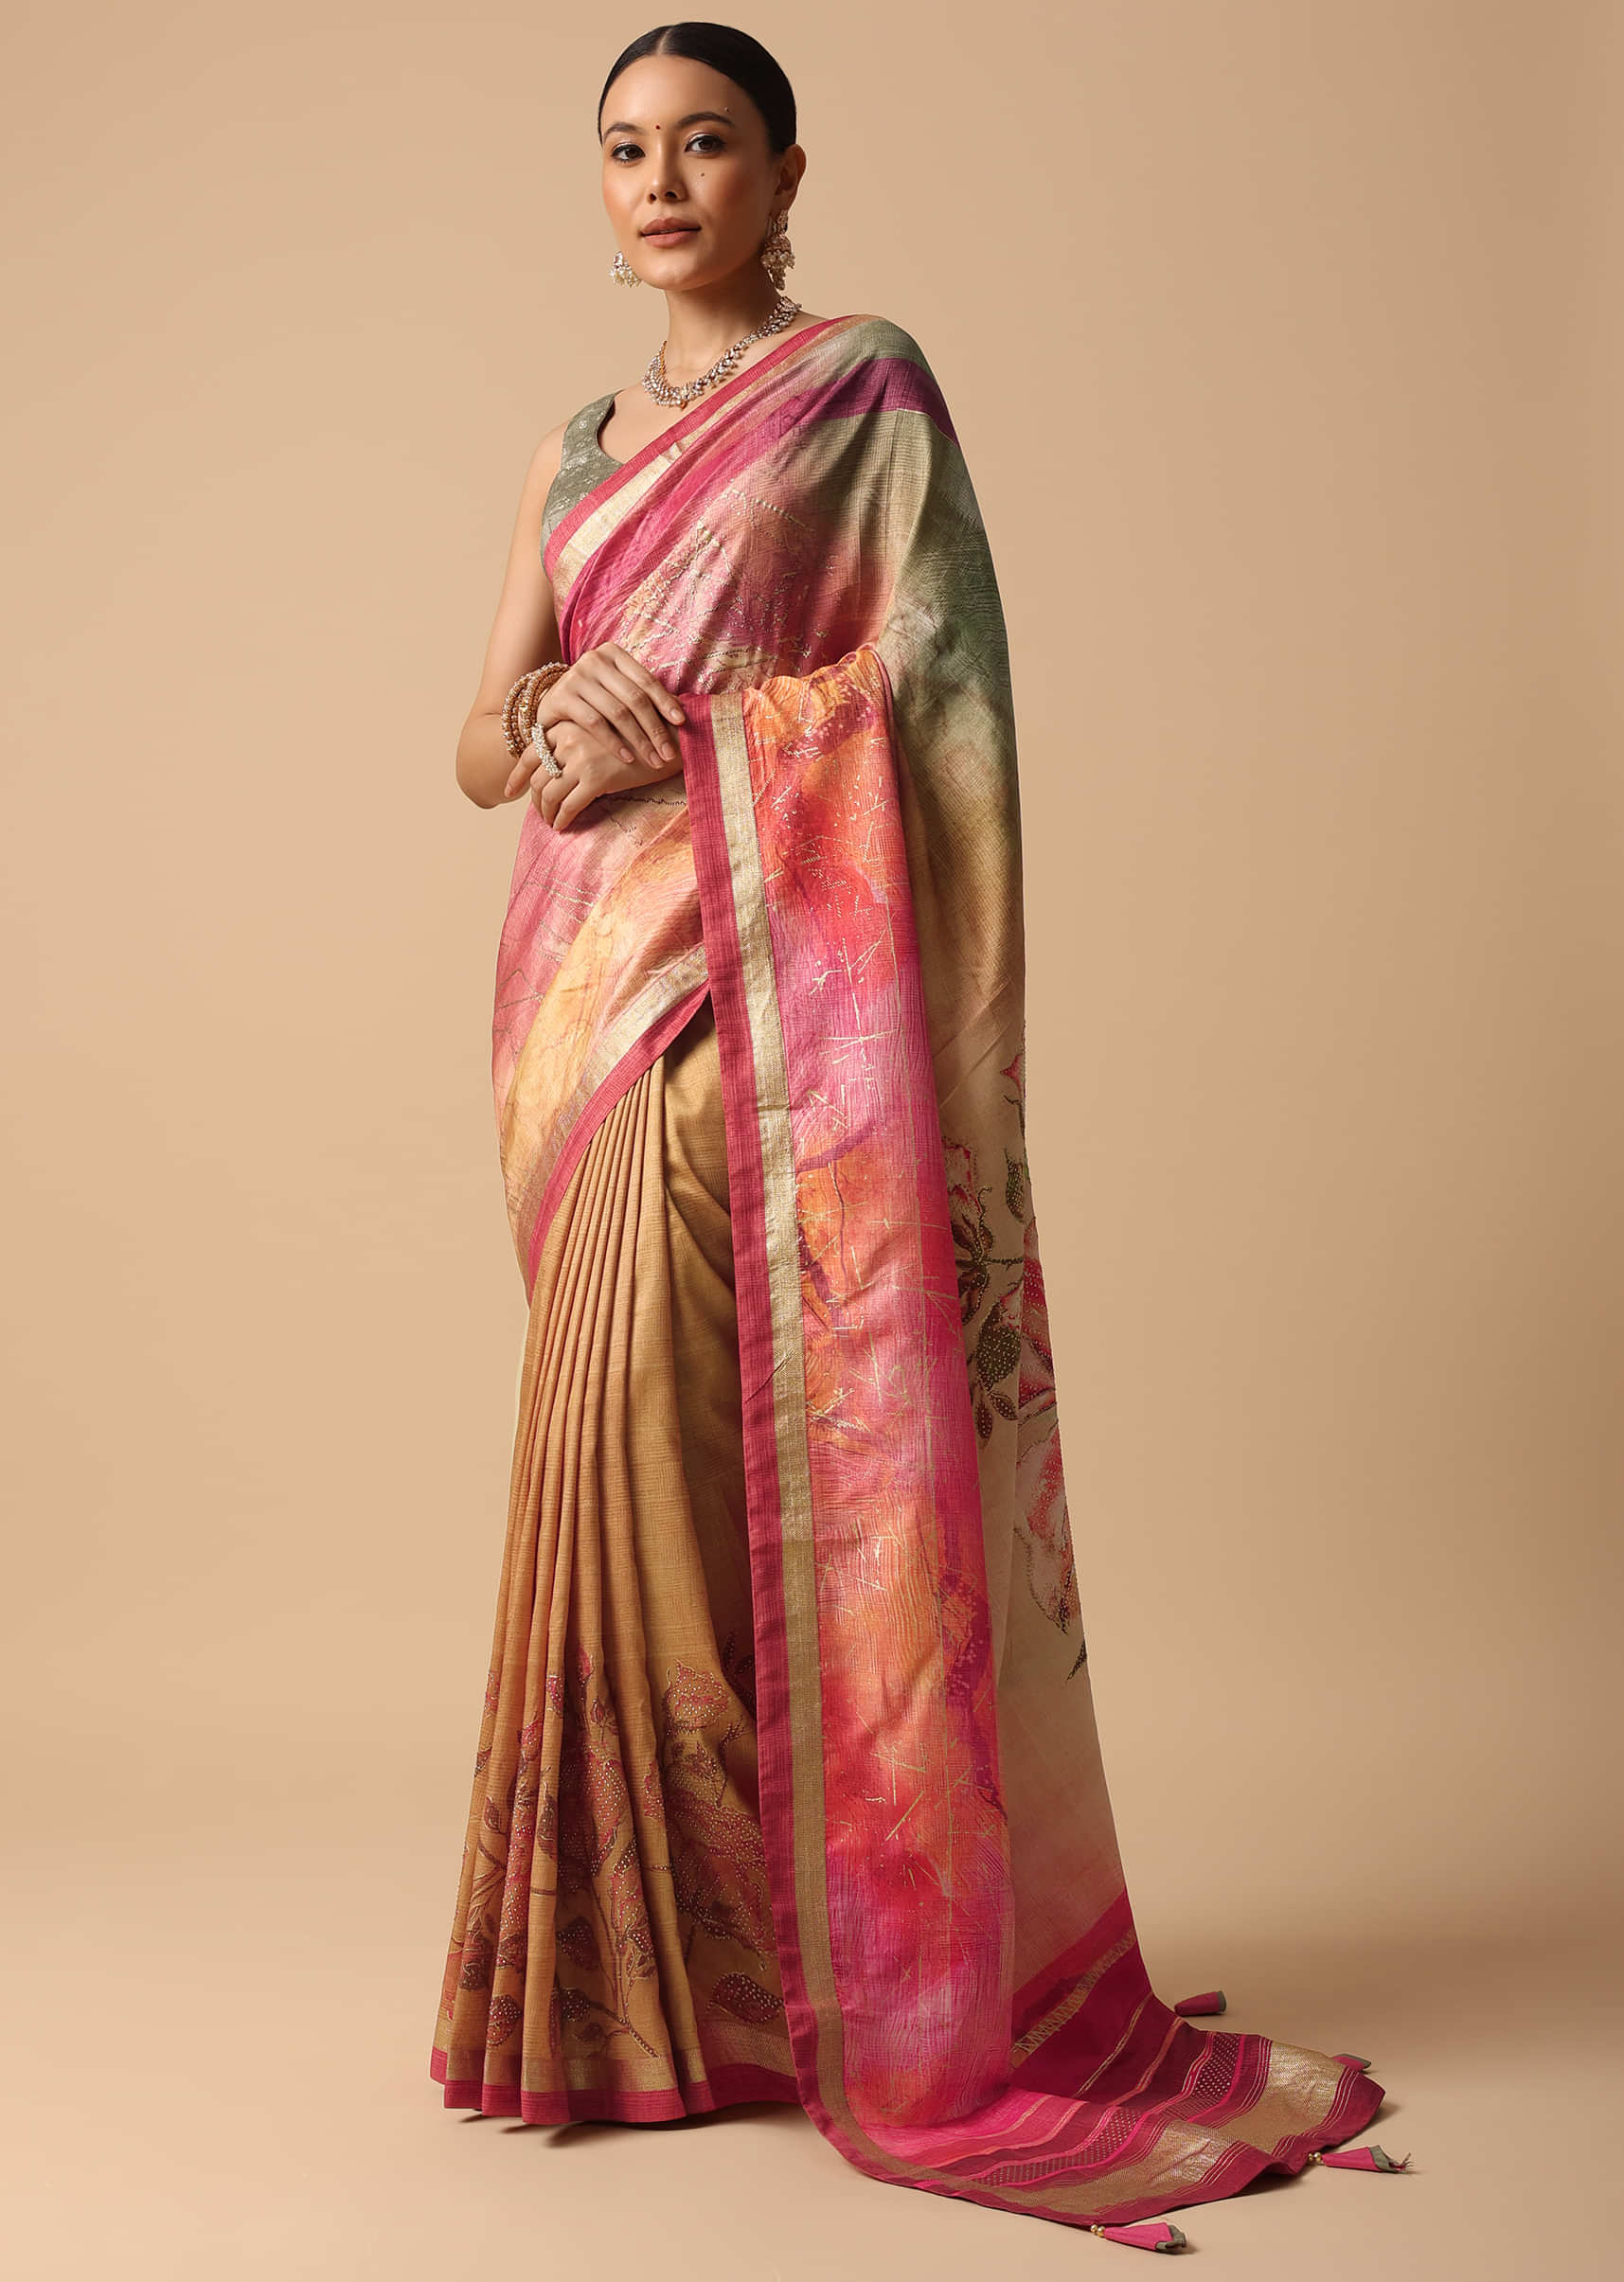 Pink Floral Indian Sari Fabric